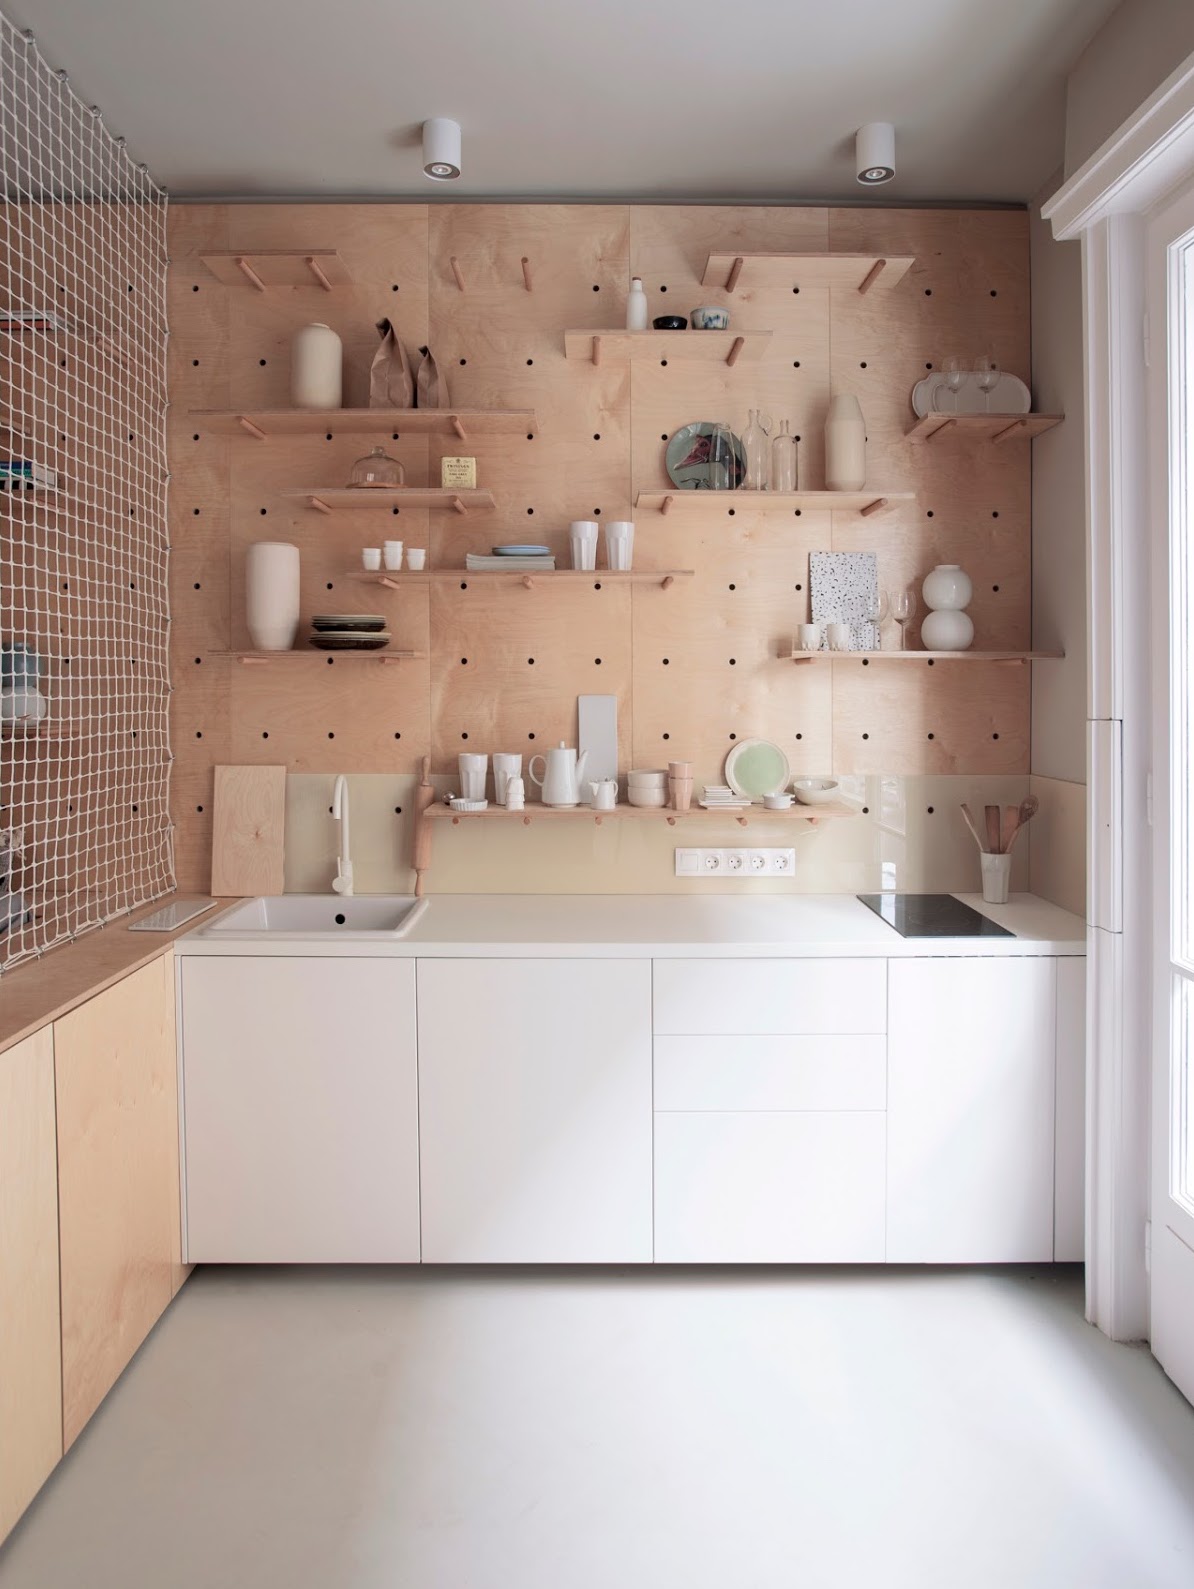 clem around the corner studio de 30m2 espace cuisine mobilier bois naturel marron blanc